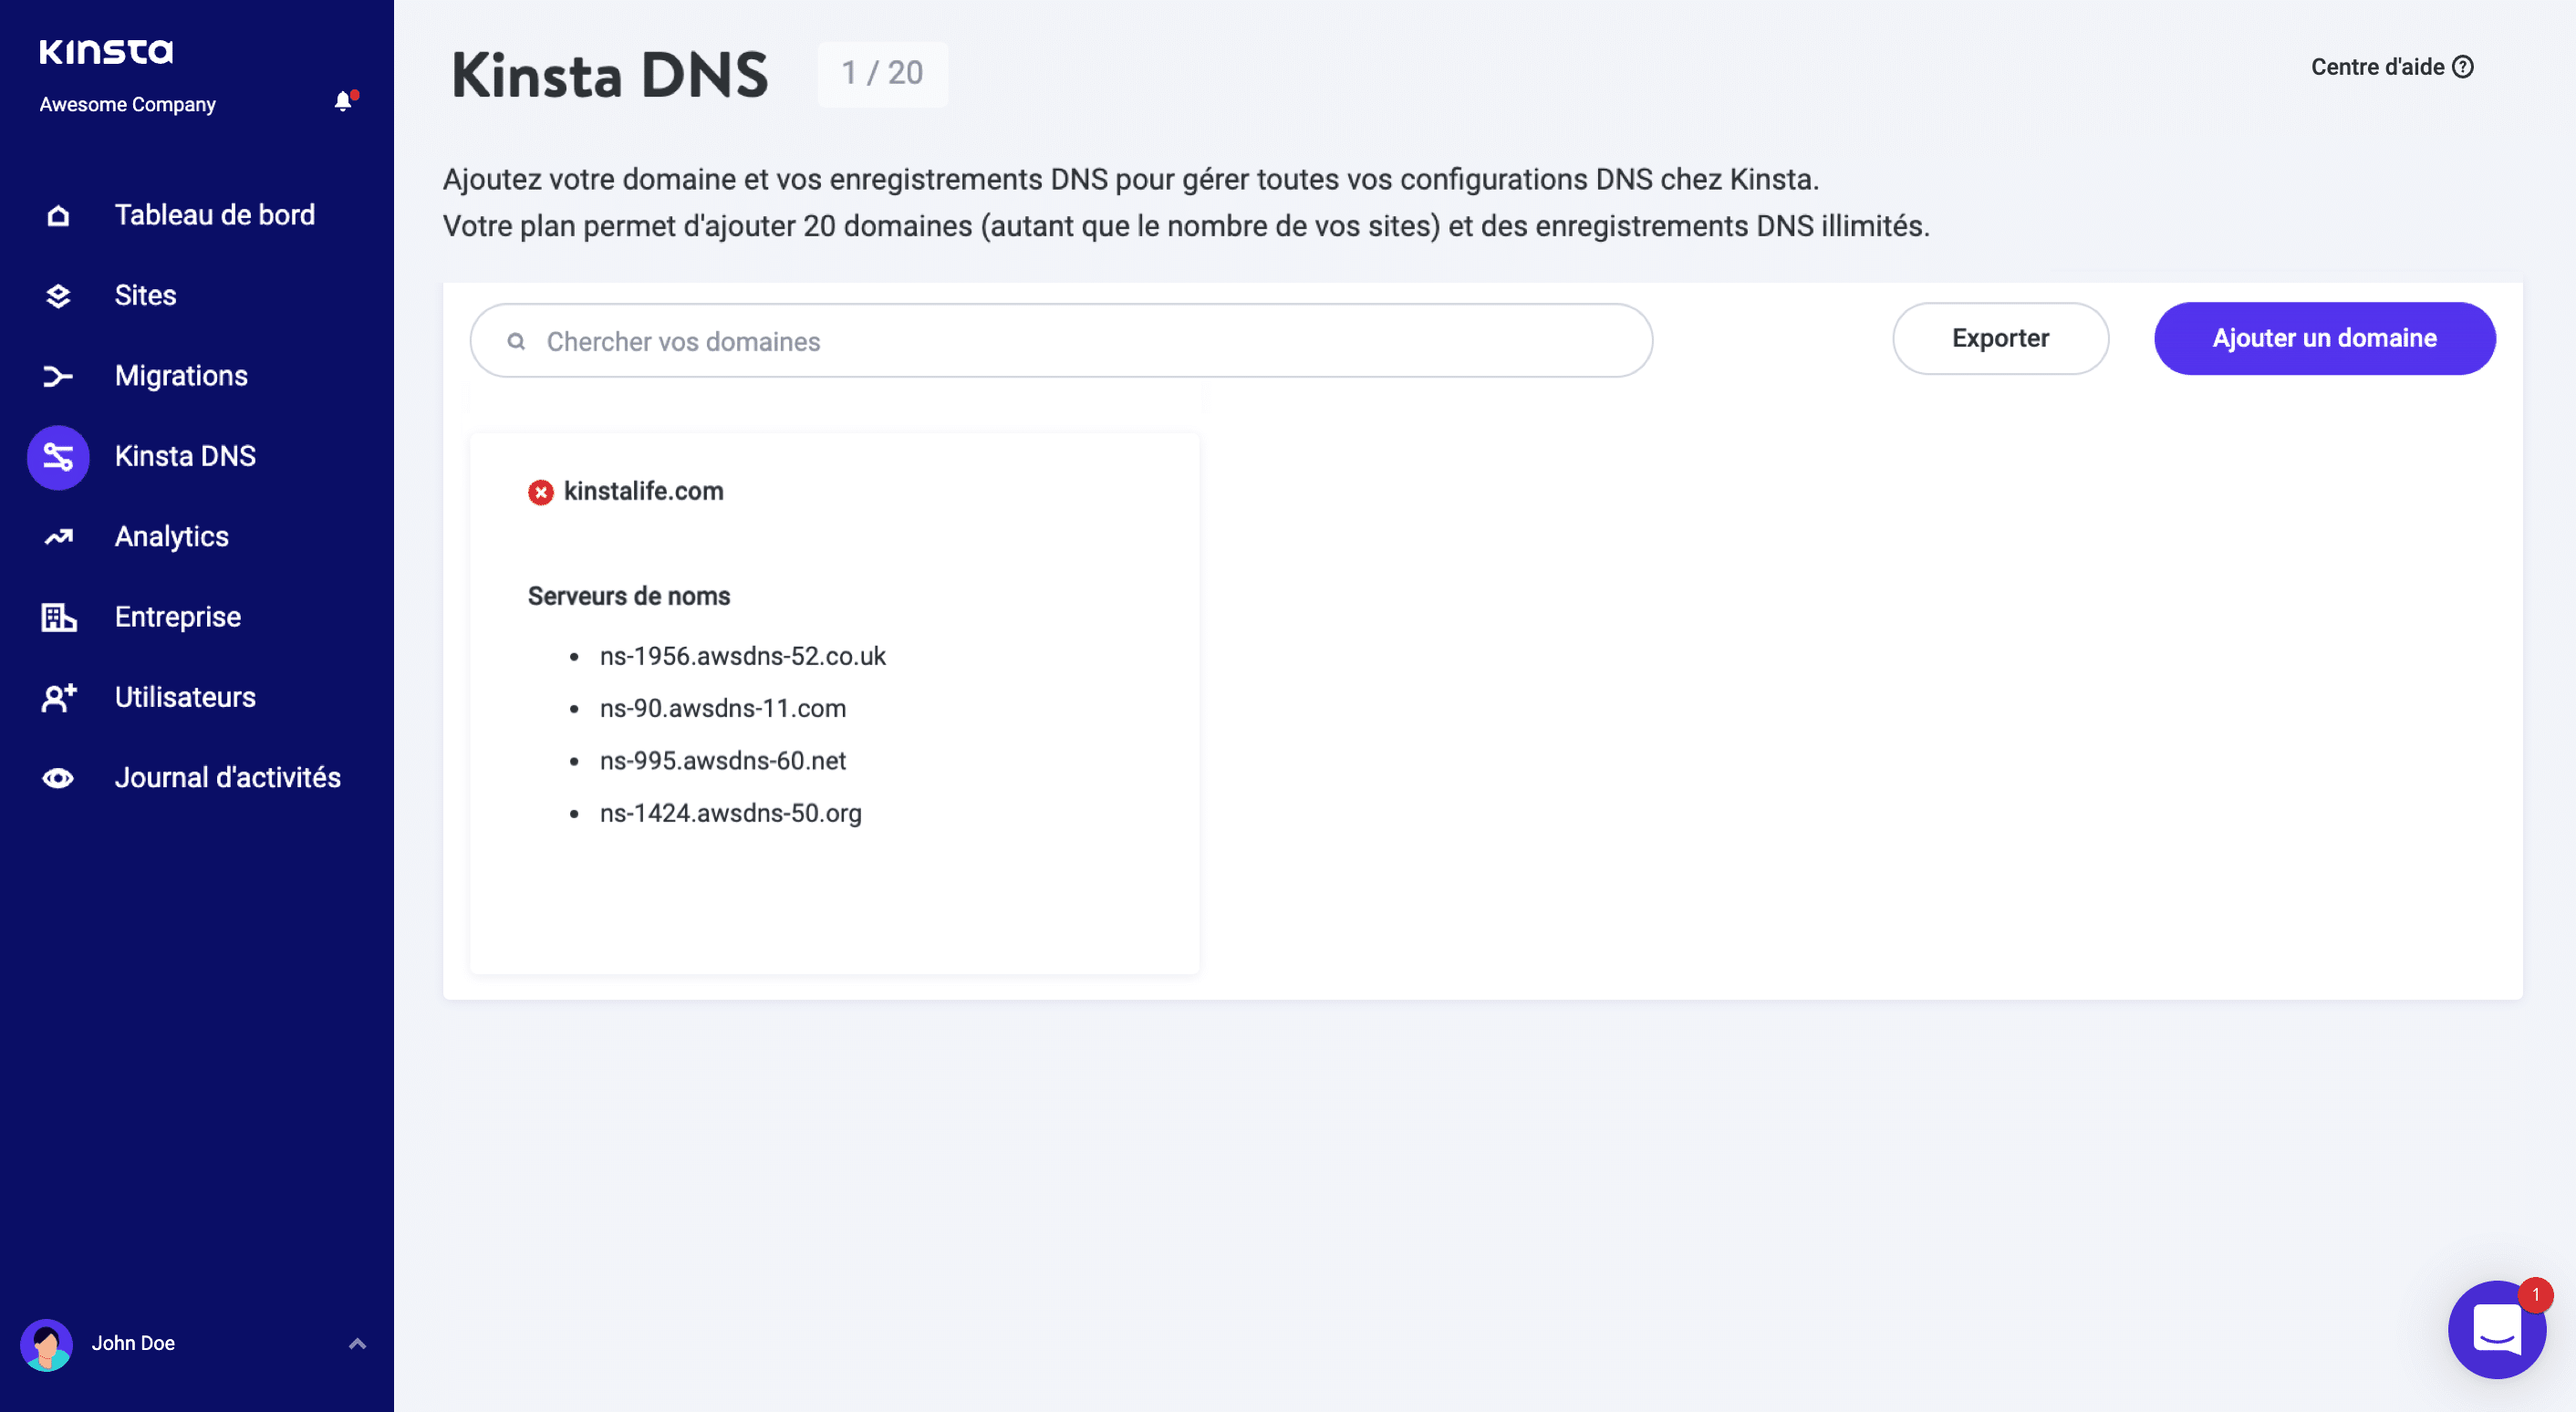 Domaines du serveur de noms DNS de Kinsta.